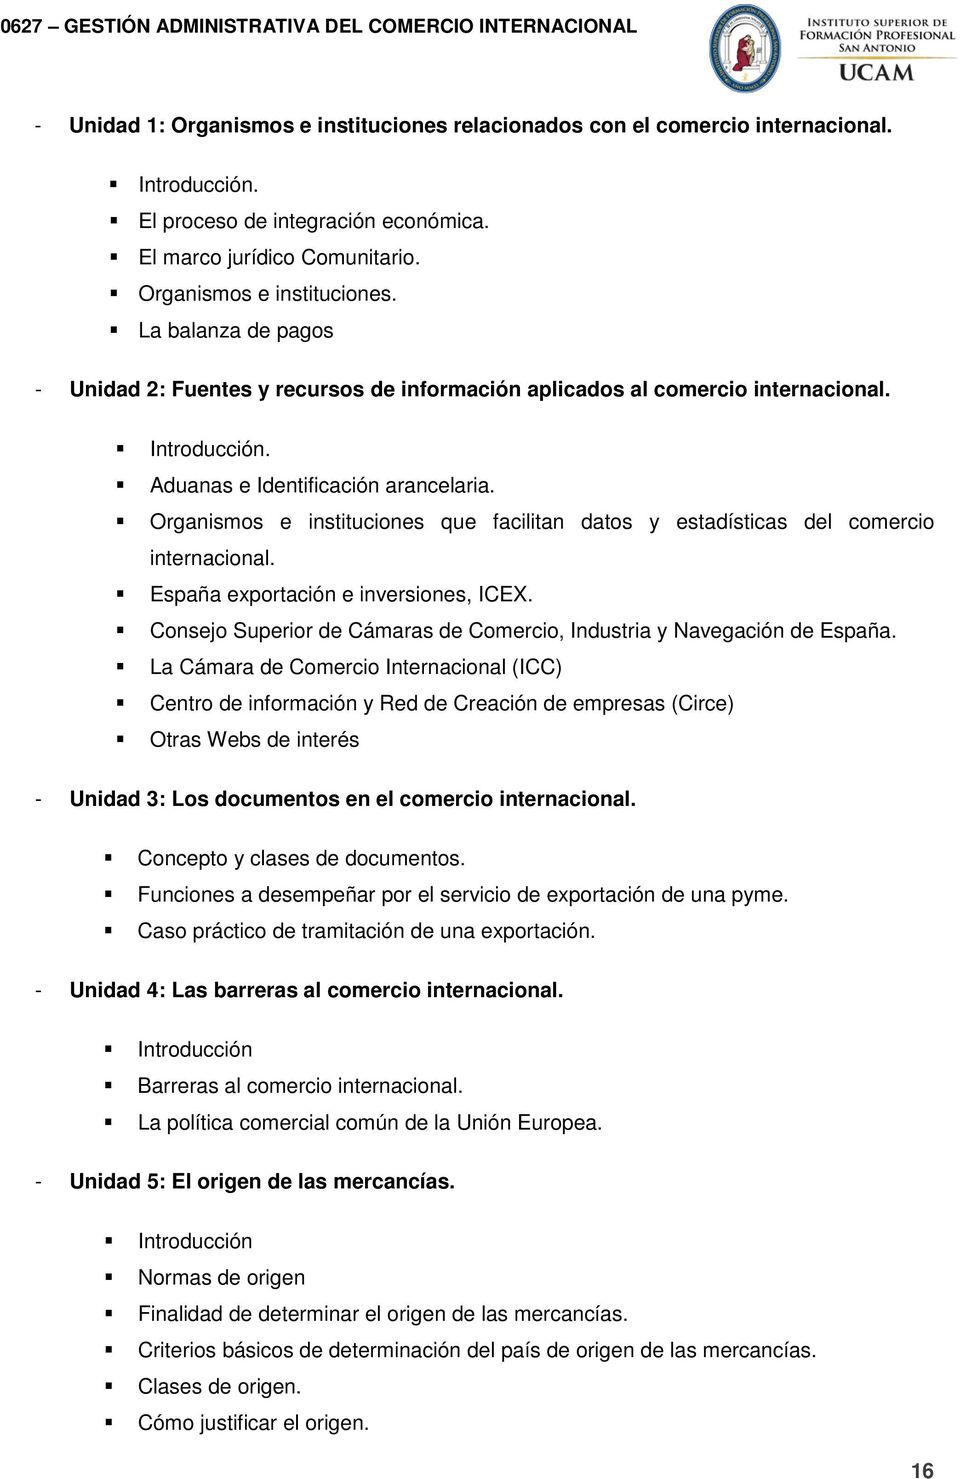 Consejo Superior de Cámaras de Comercio, Industria y Navegación de España.